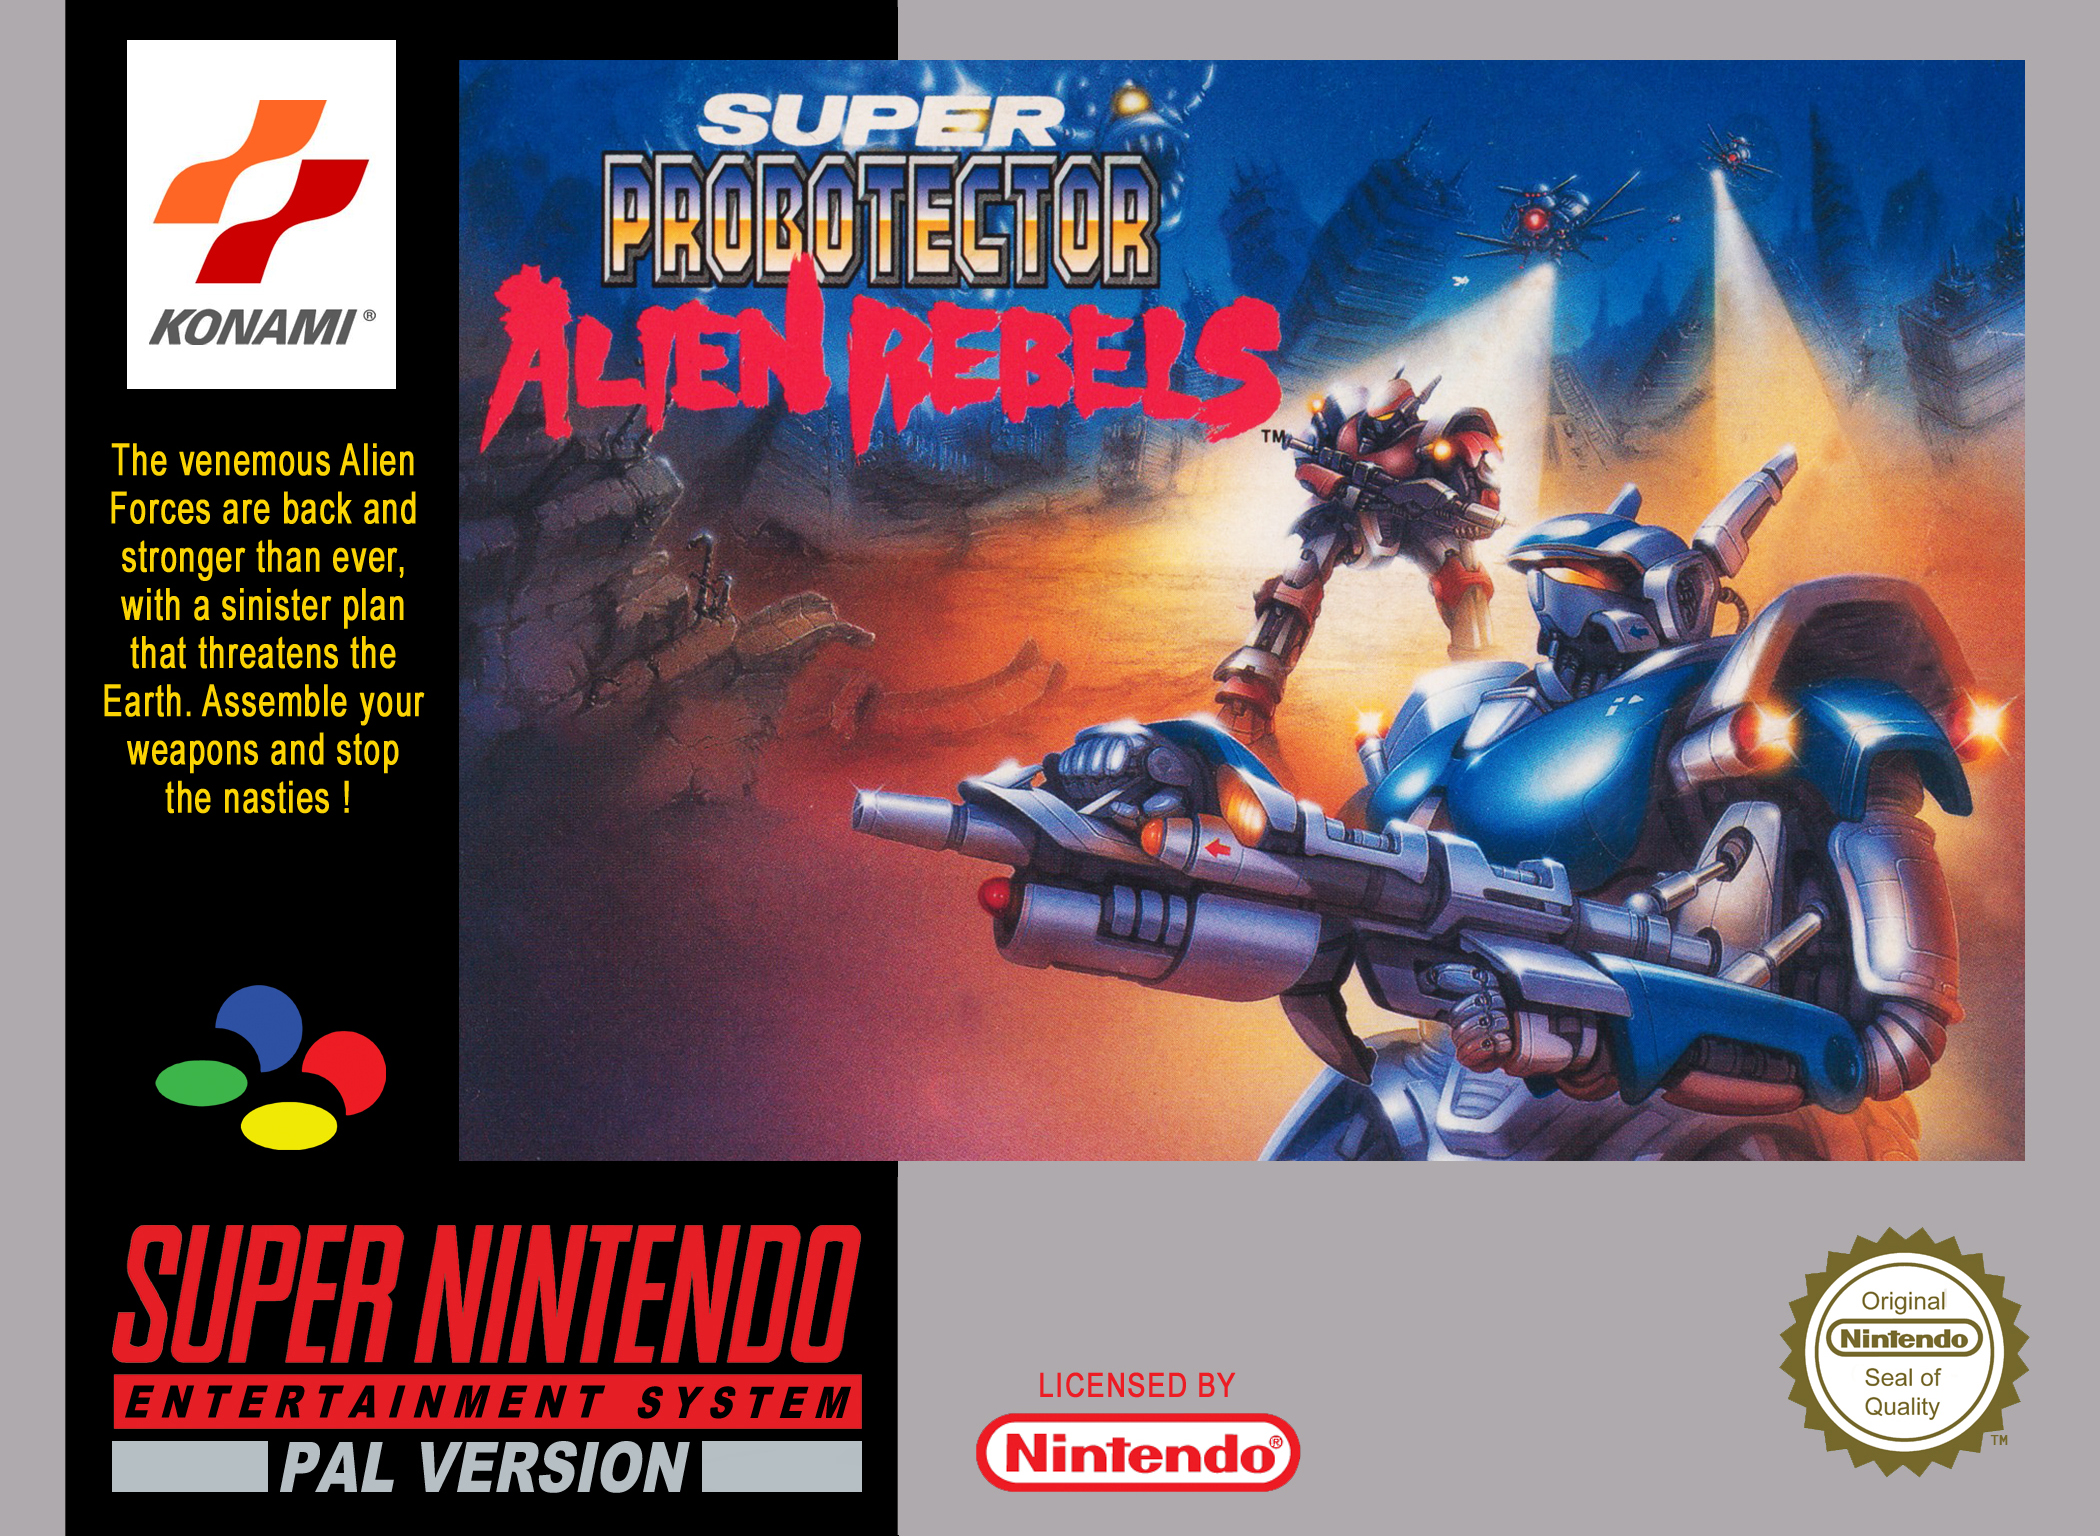 Contra III The Alien Wars, Super Nintendo, Jogos